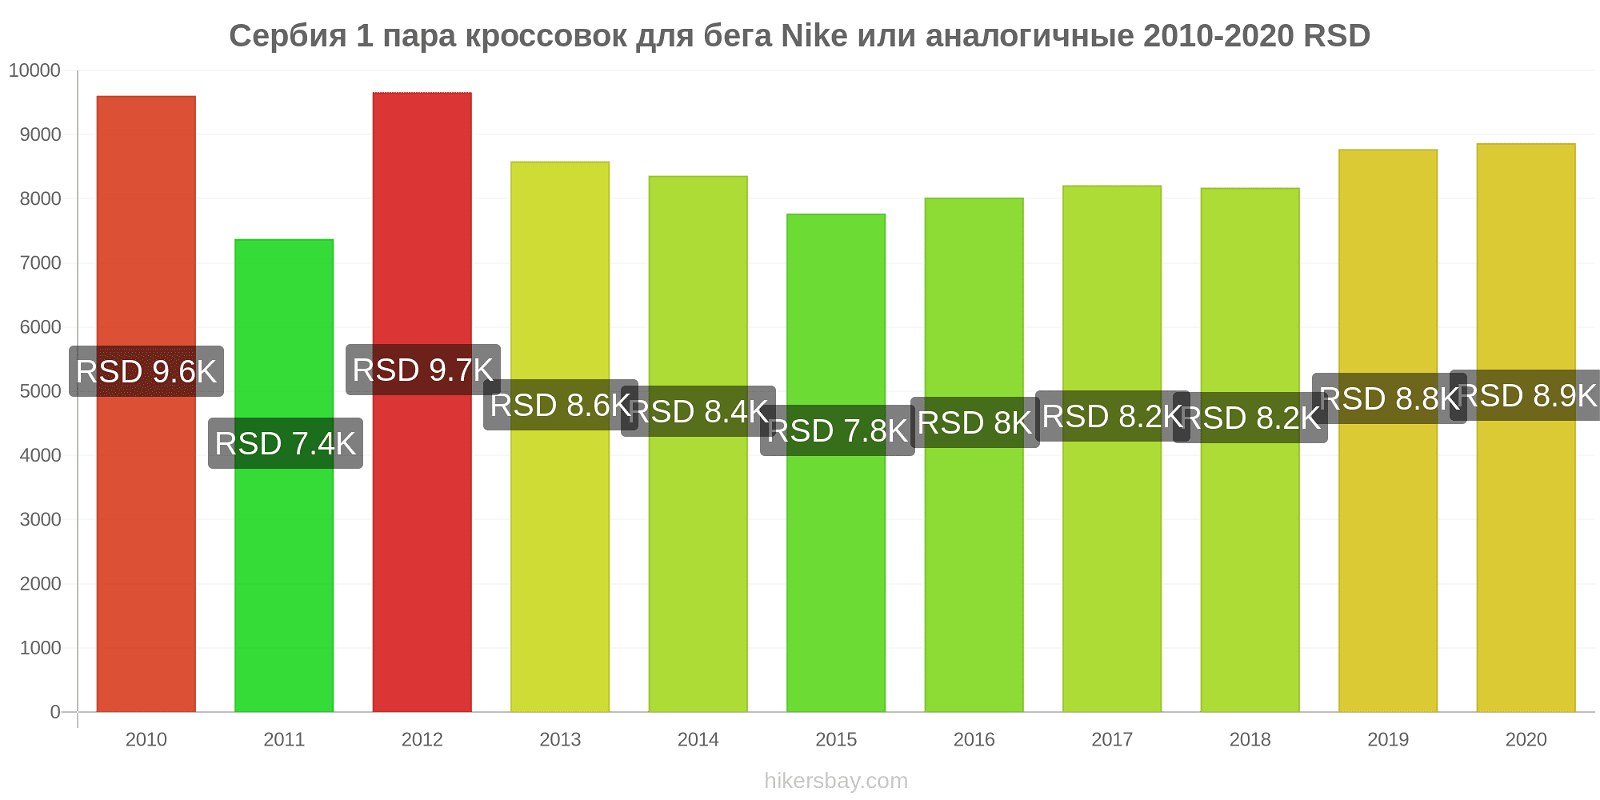 Сербия изменения цен 1 пара кроссовок для бега Nike или аналогичные hikersbay.com